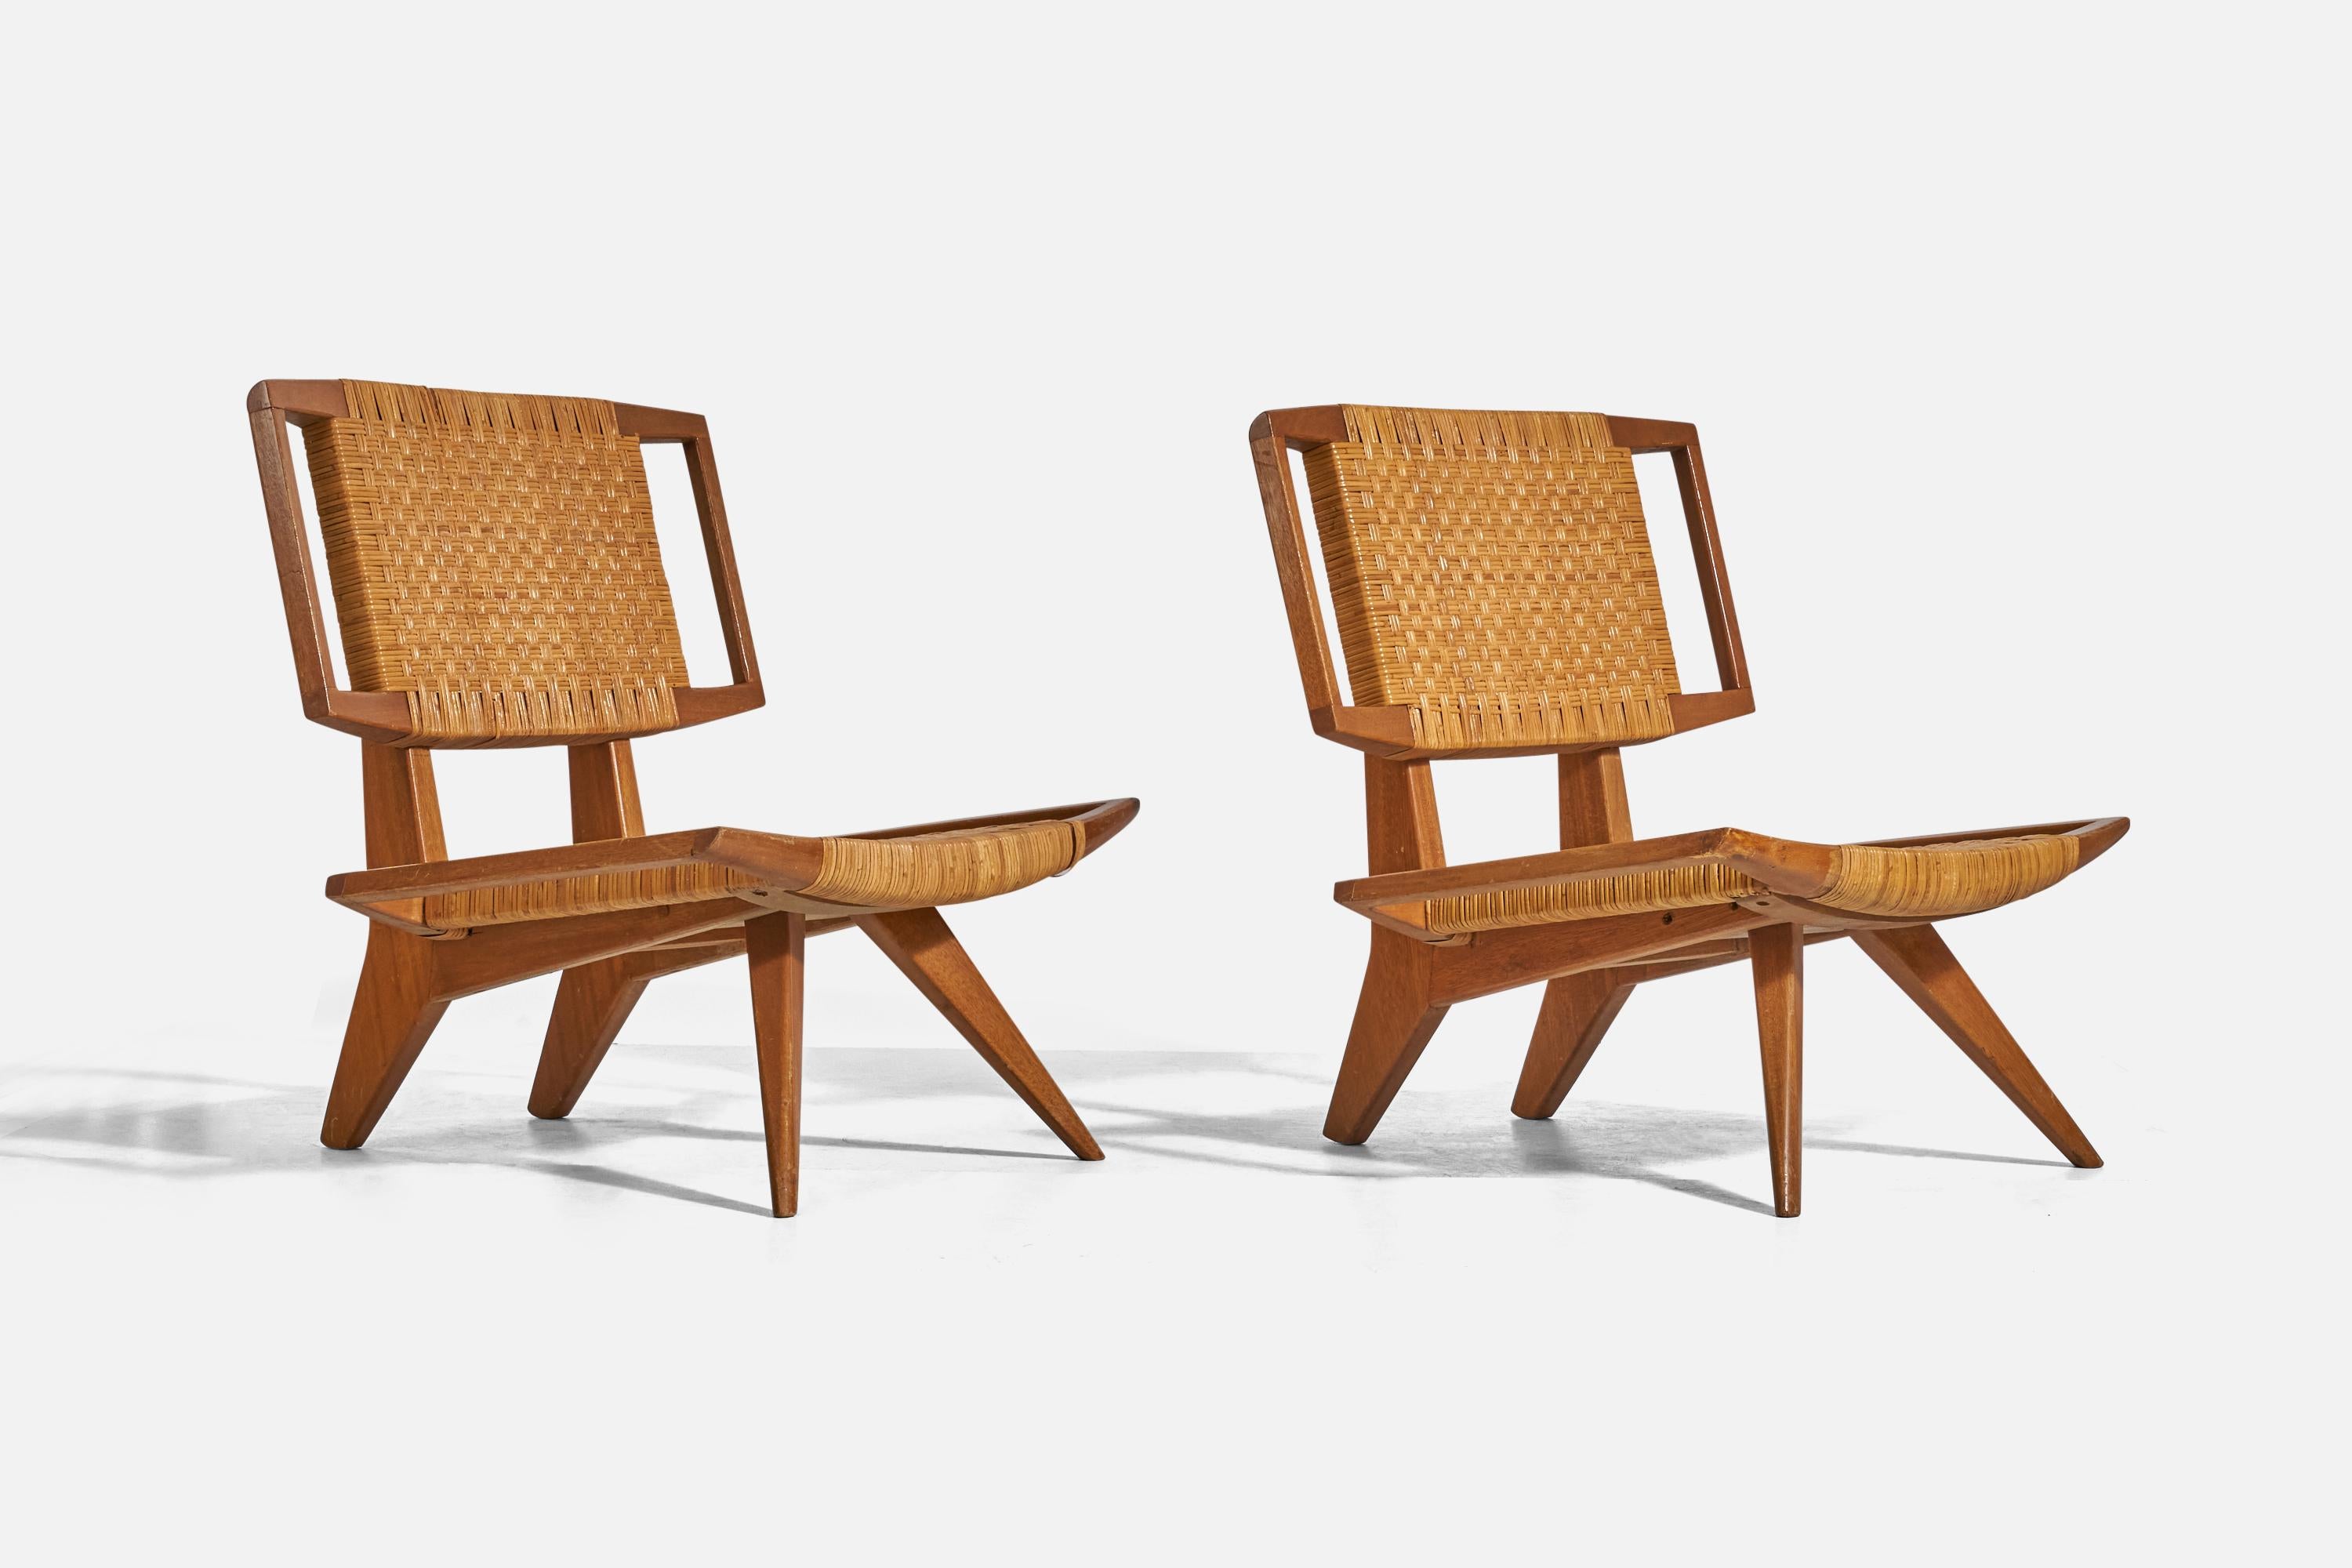 Ein Paar Lounge-Sessel aus Rattan und Mahagoni, entworfen von Paul László und hergestellt von Glenn of California, Vereinigte Staaten, 1950er Jahre. 

